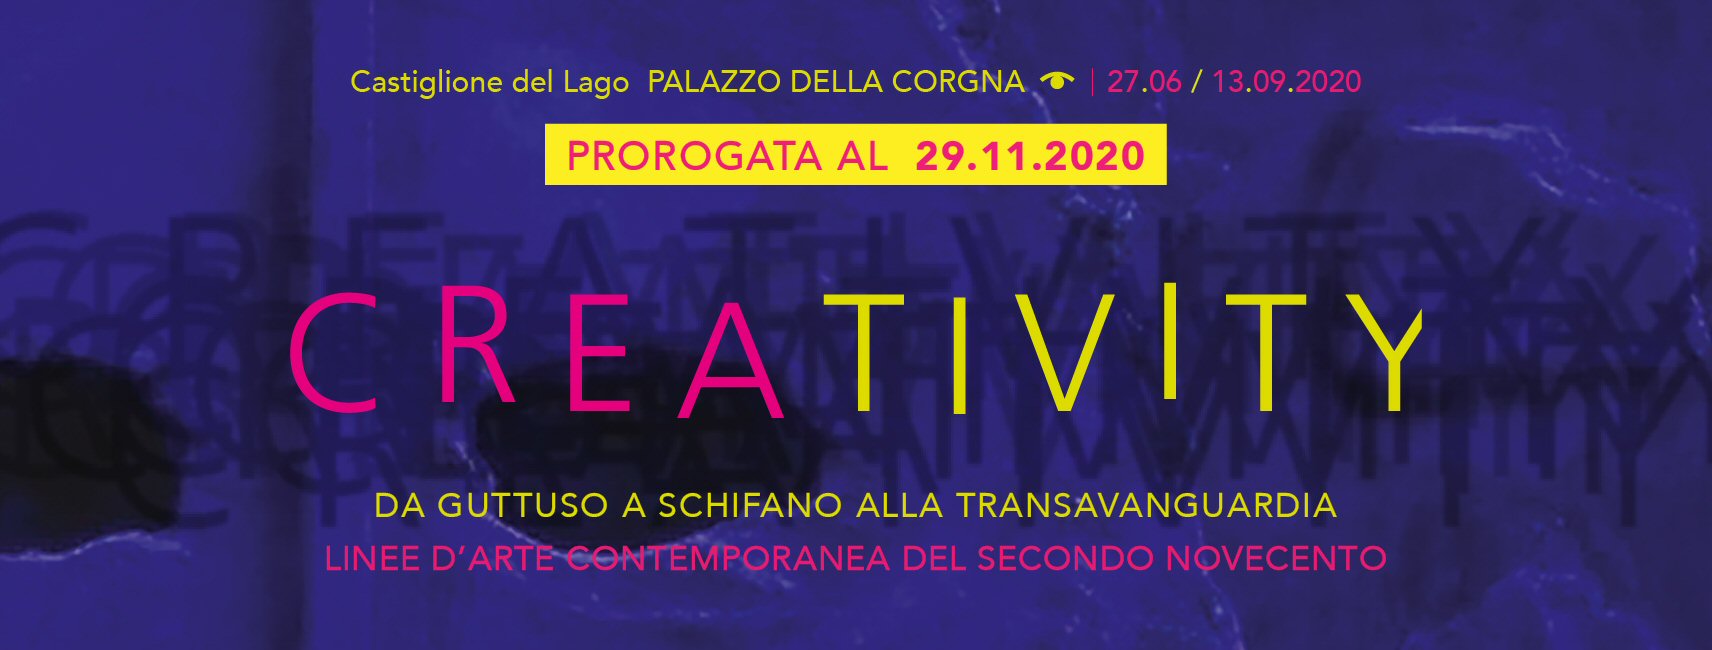 Creativity - proroga al 29 novembre 2020